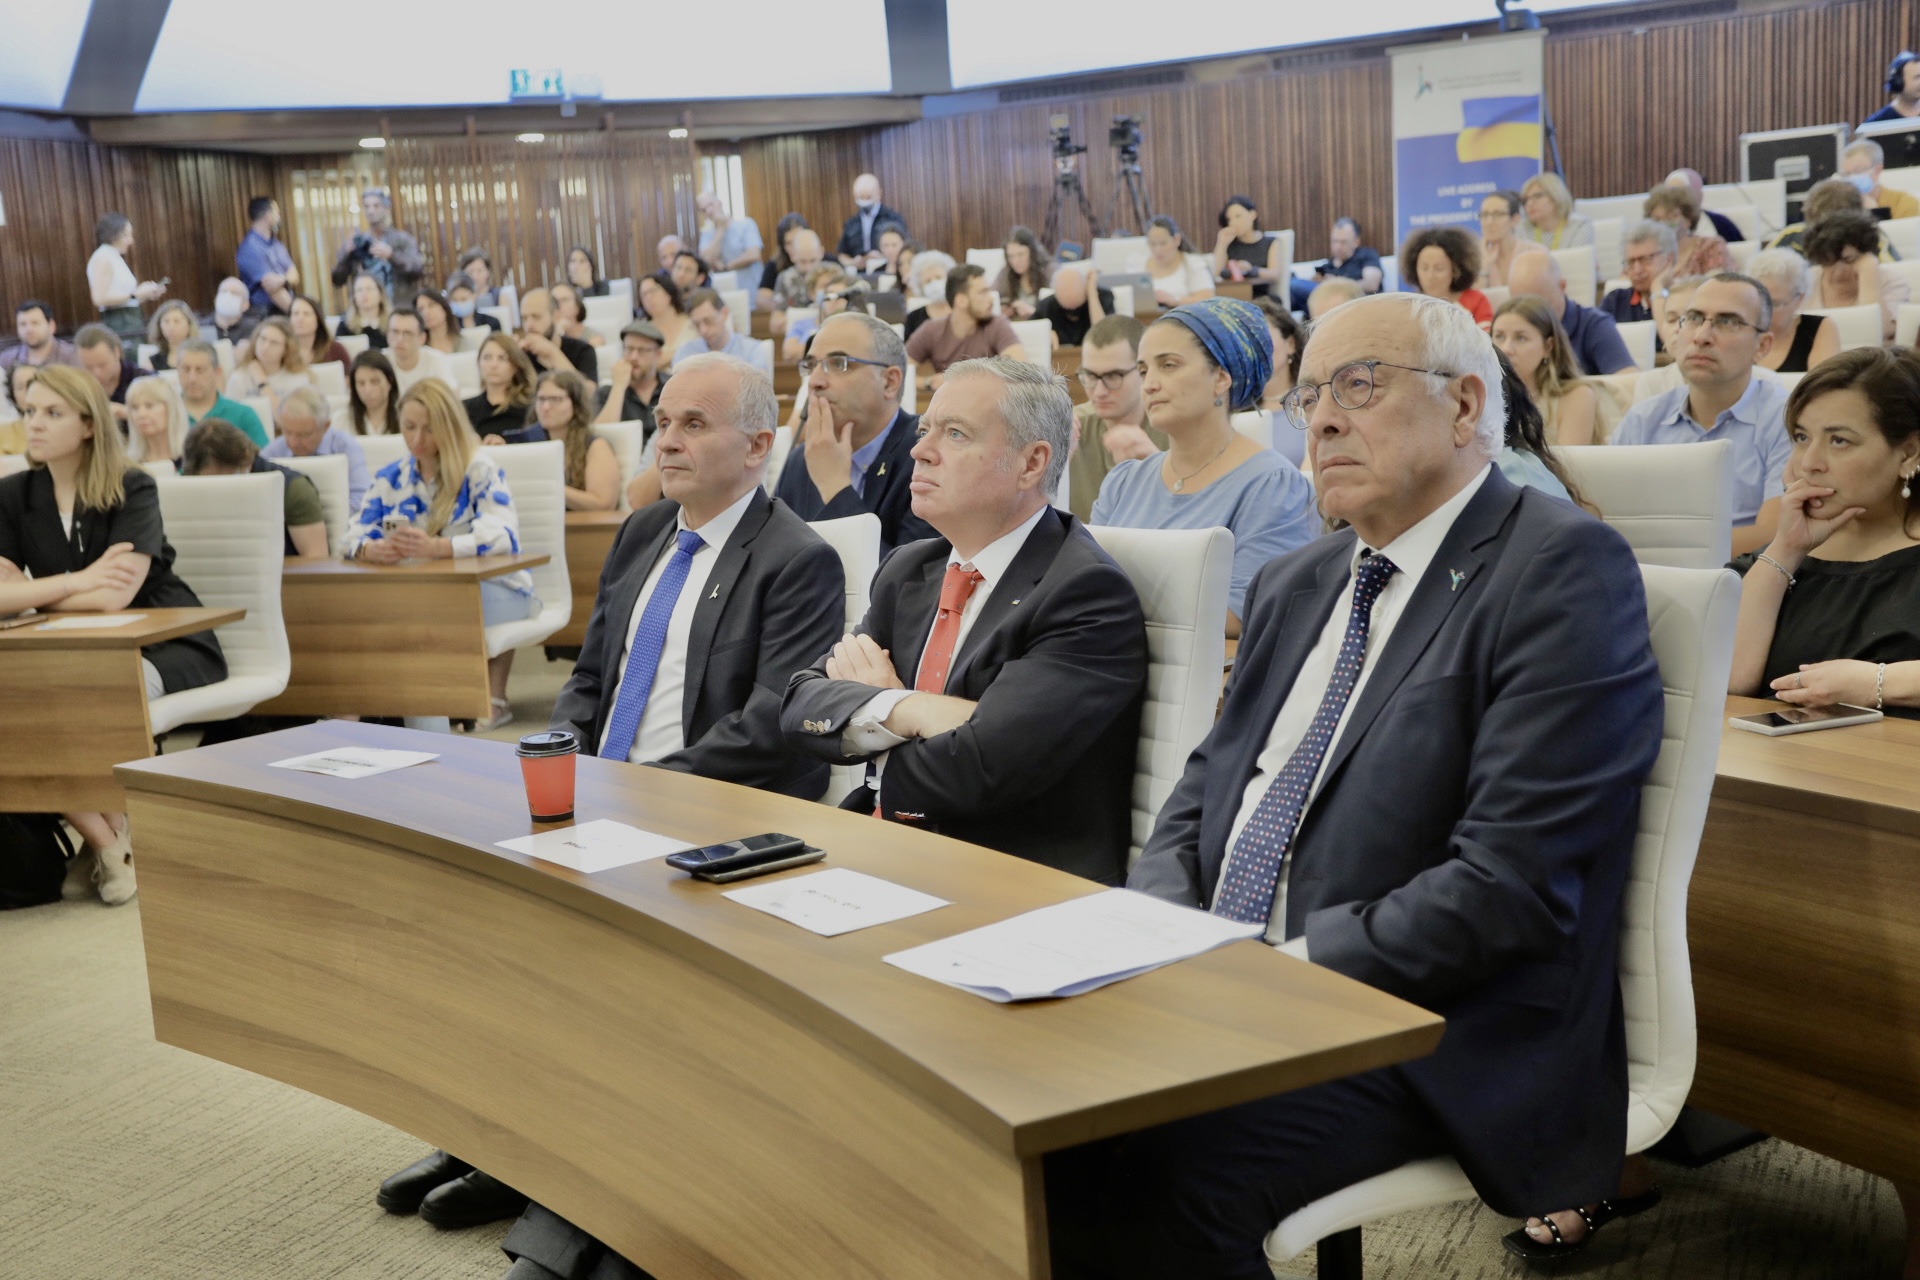 En primera fila, de izquierda a derecha: El presidente de la Universidad Hebrea, Prof. Asher Cohen, el Embajador de Ucrania en Israel, Yevgen Korniychuk, el vicepresidente de la universidad, Embajador Yossi Gal.